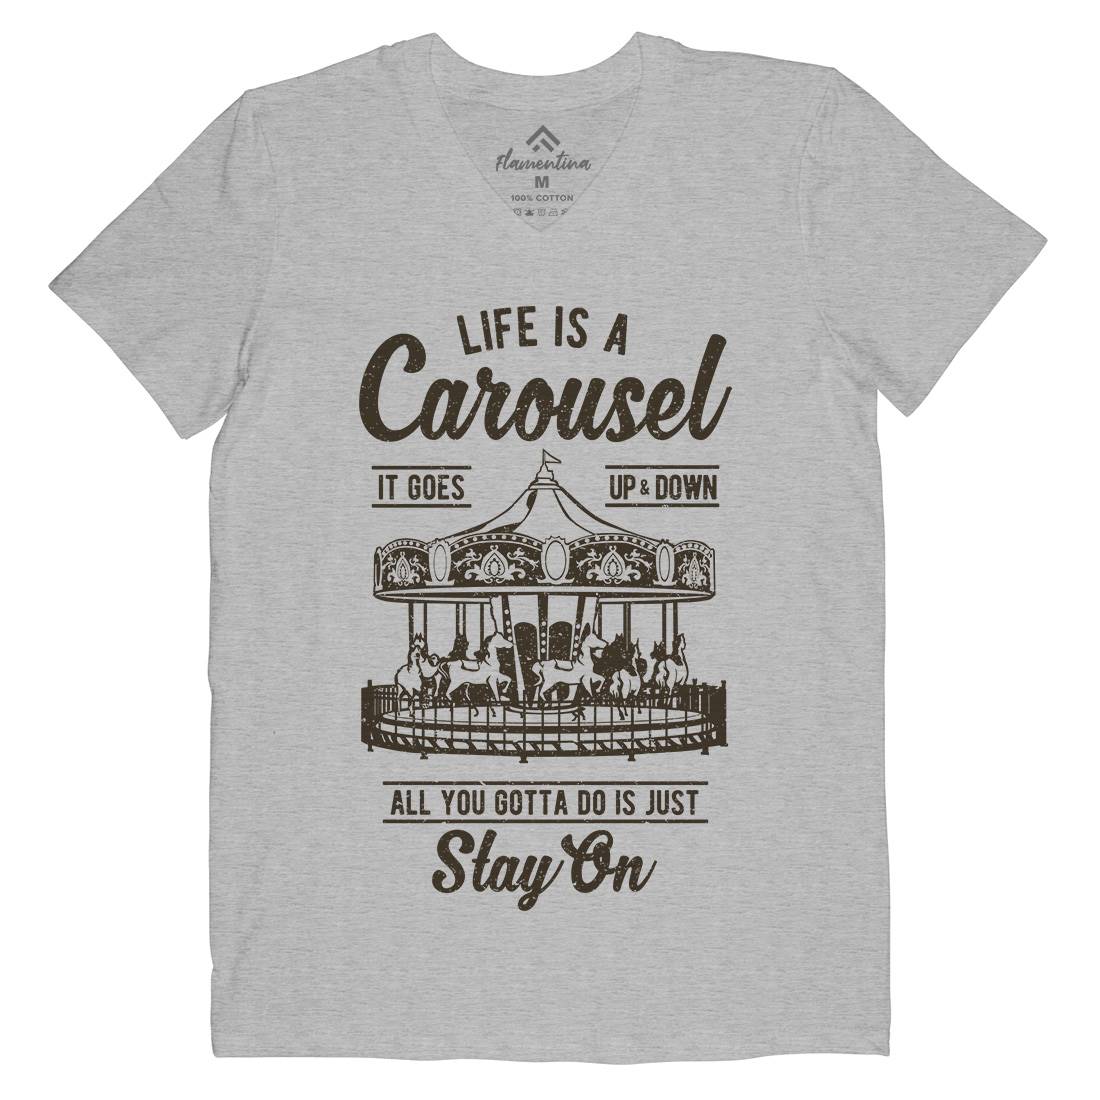 Carousel Mens V-Neck T-Shirt Retro A633